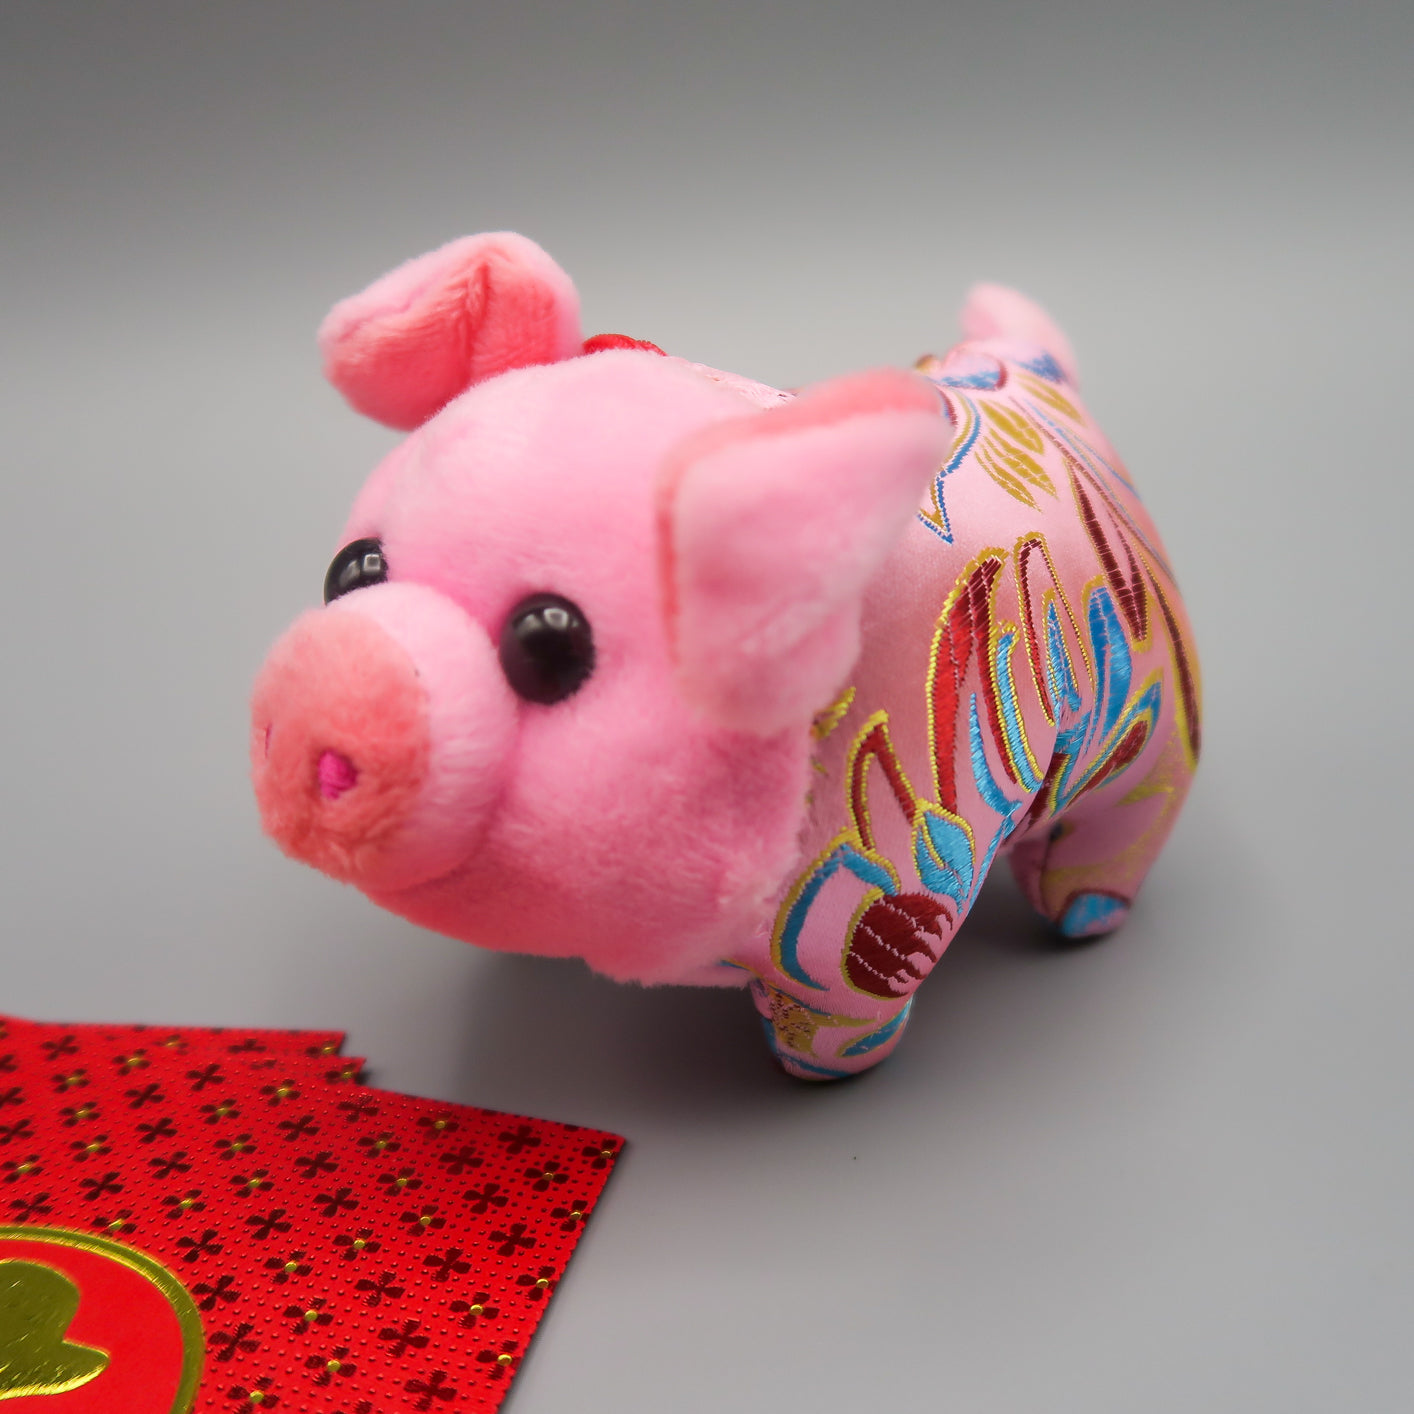 ตุ๊กตาลูกหมู ร่ำรวย หมูคู่ หมูโชคดี - Chinese Pigs 790-920